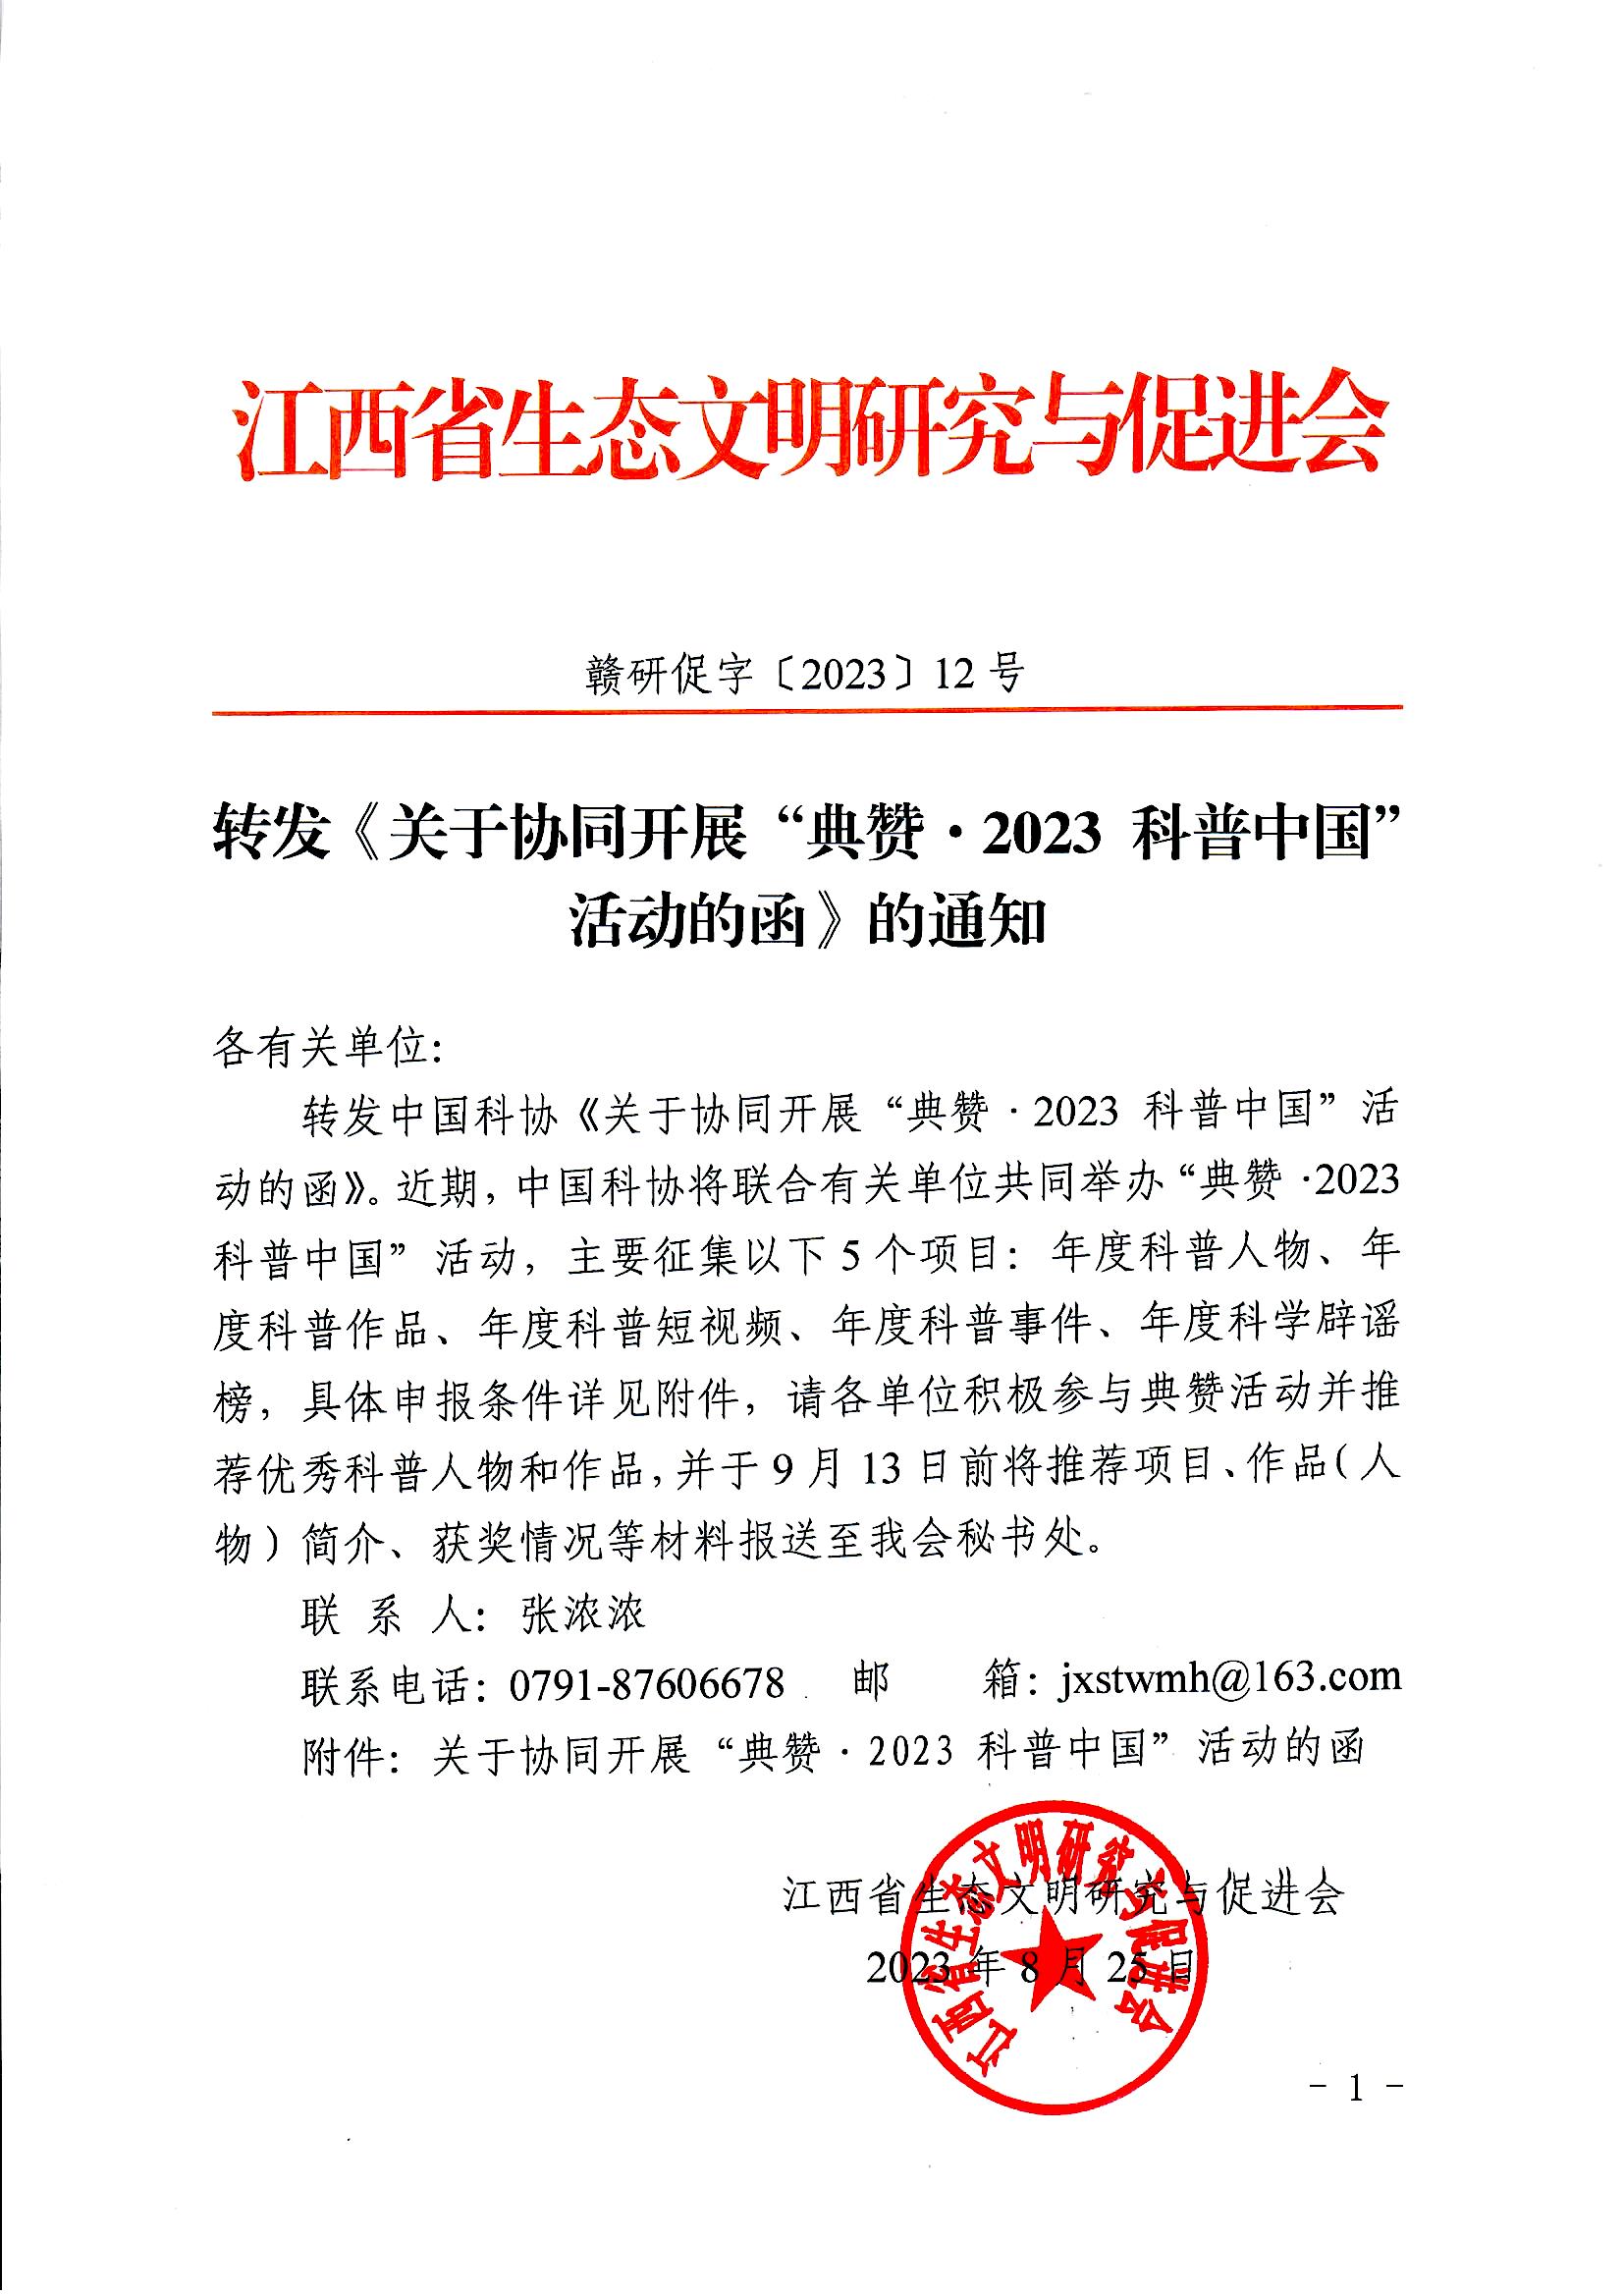 转发《关于协同开展“典赞·2023 科普中国”活动的函》的通知.jpg